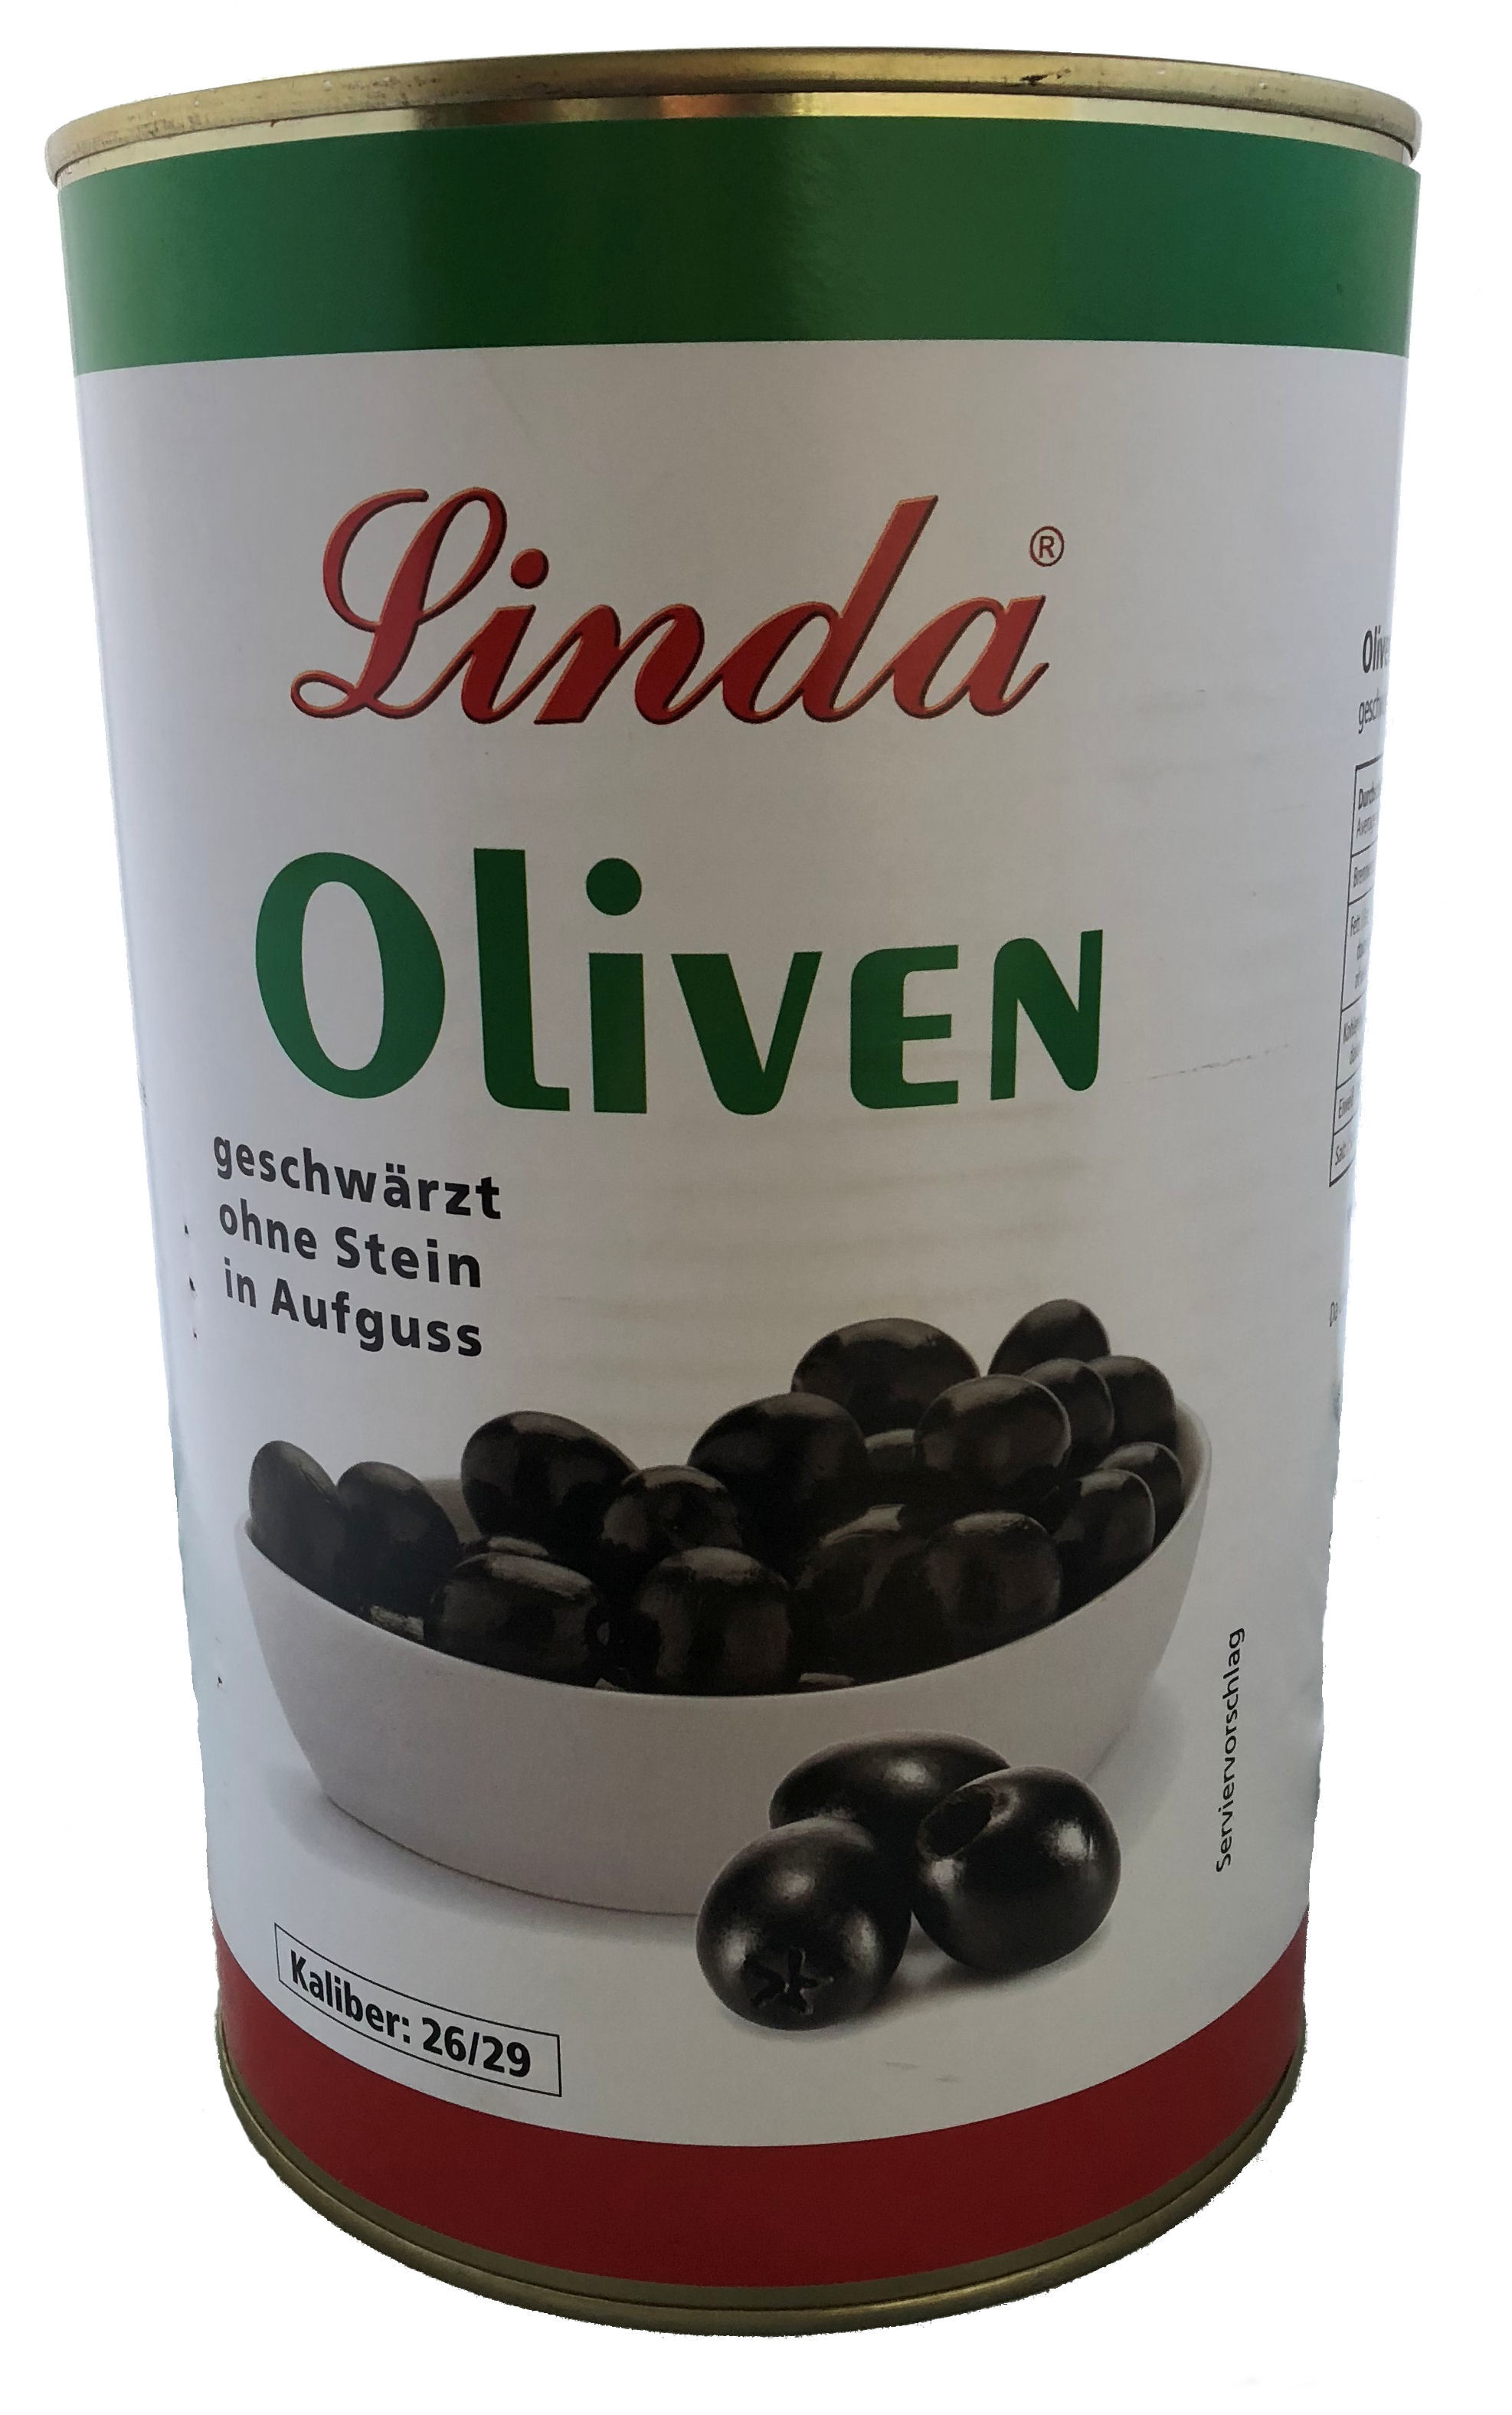 Oliven schwarz ohne Stein Kaliber 26/29 4250ml